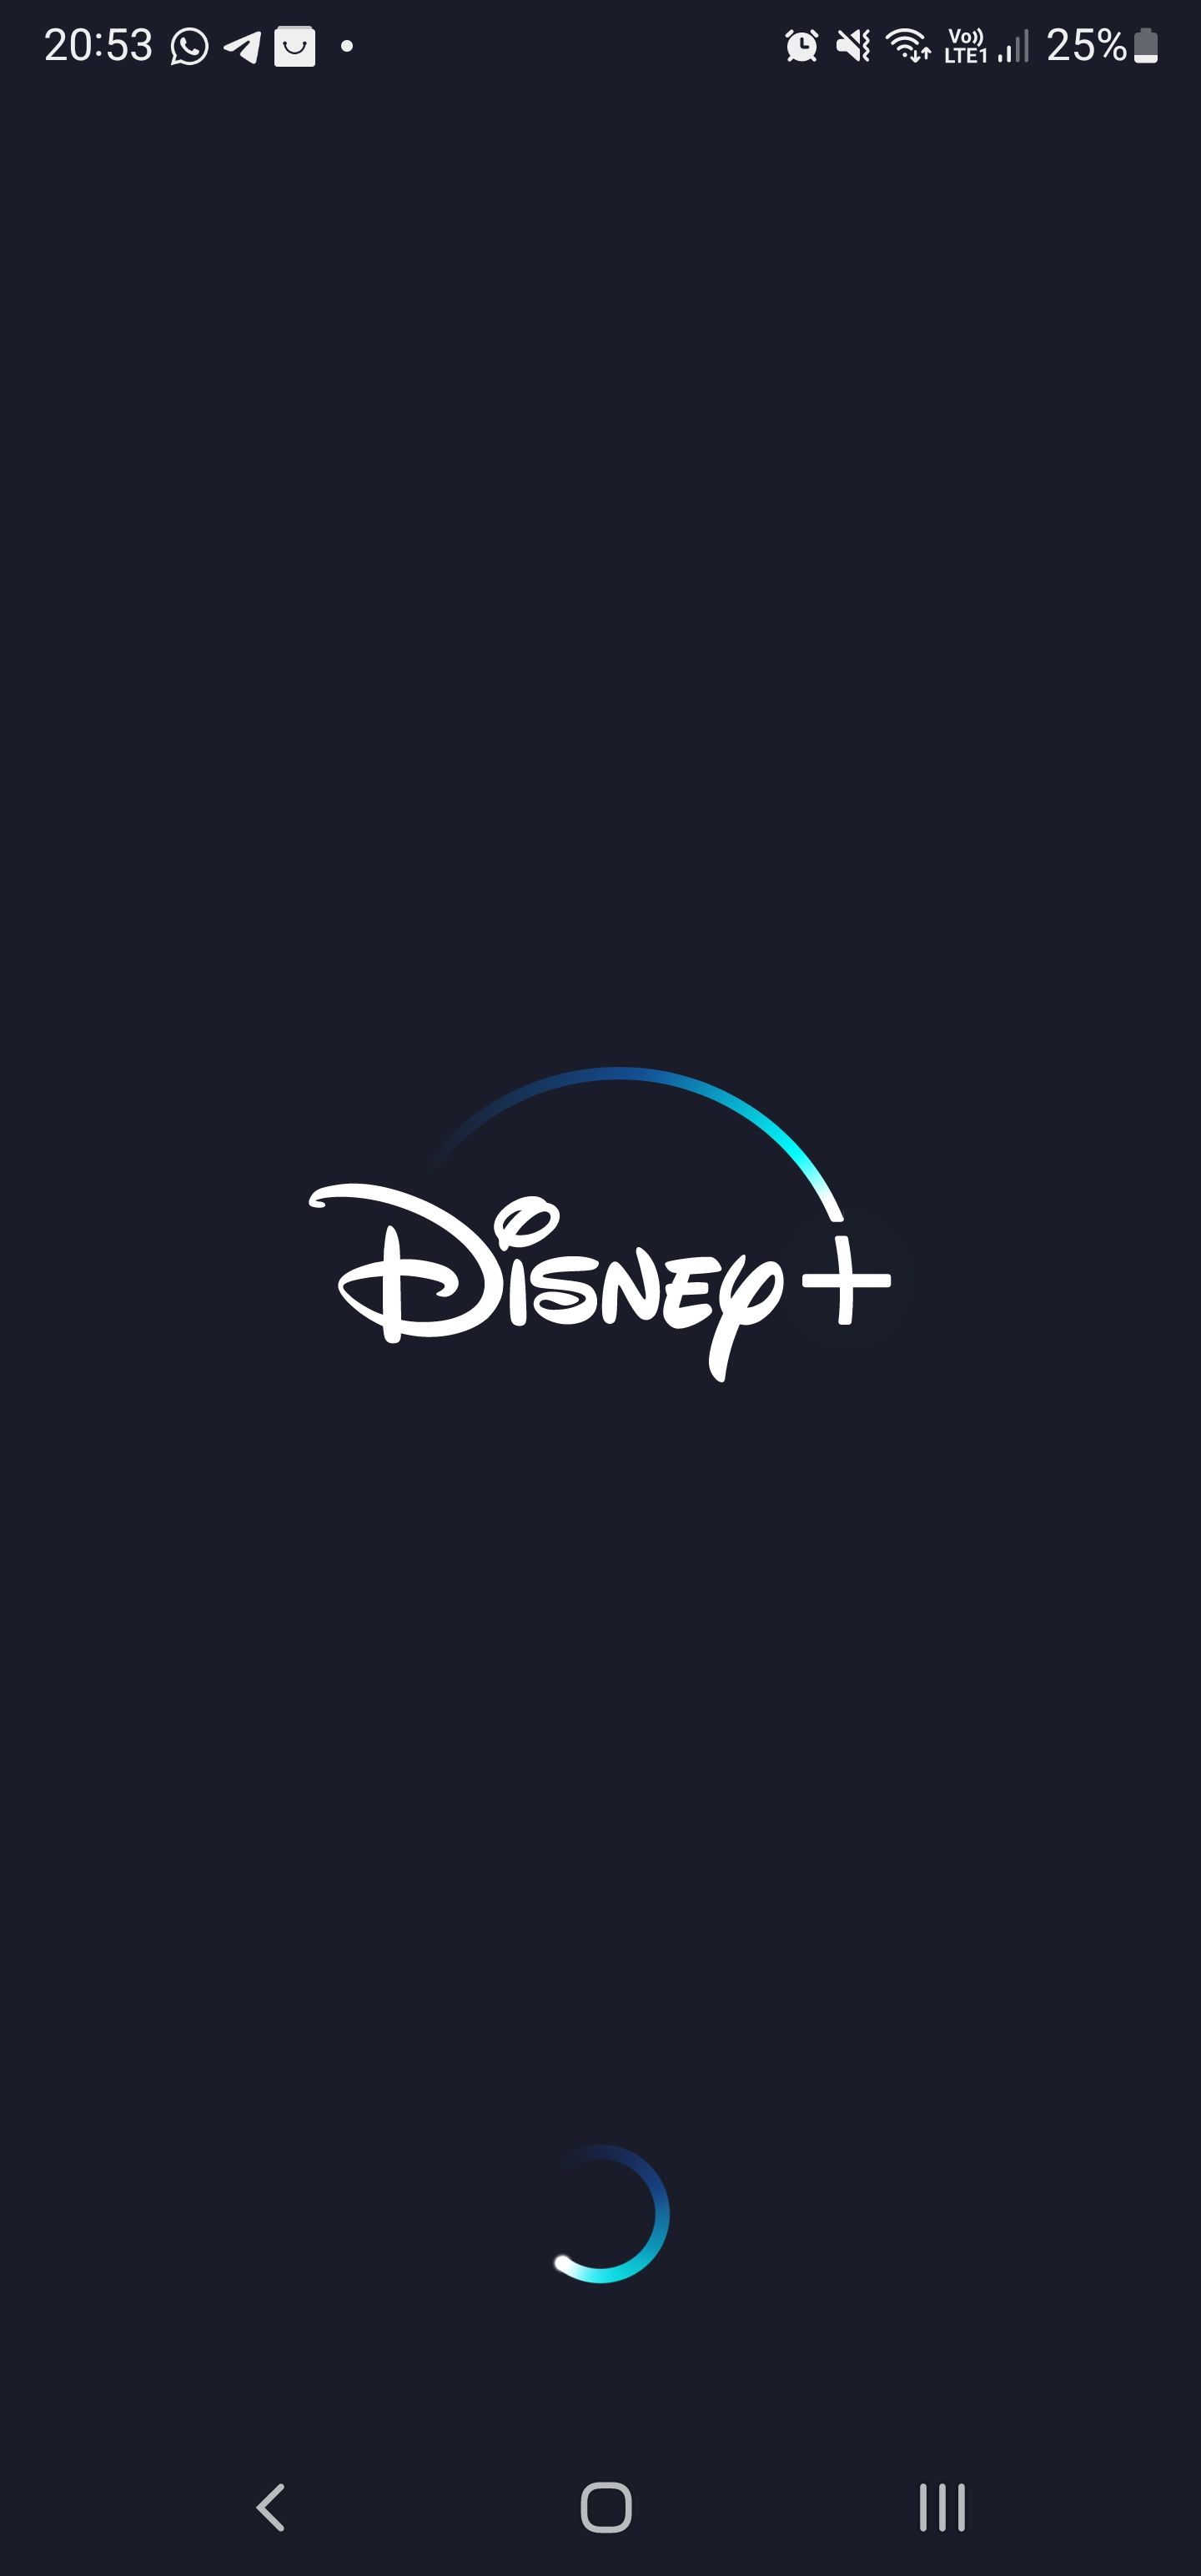 Quero cancelar minha assinatura Disney Plus - Comunidade Google Play